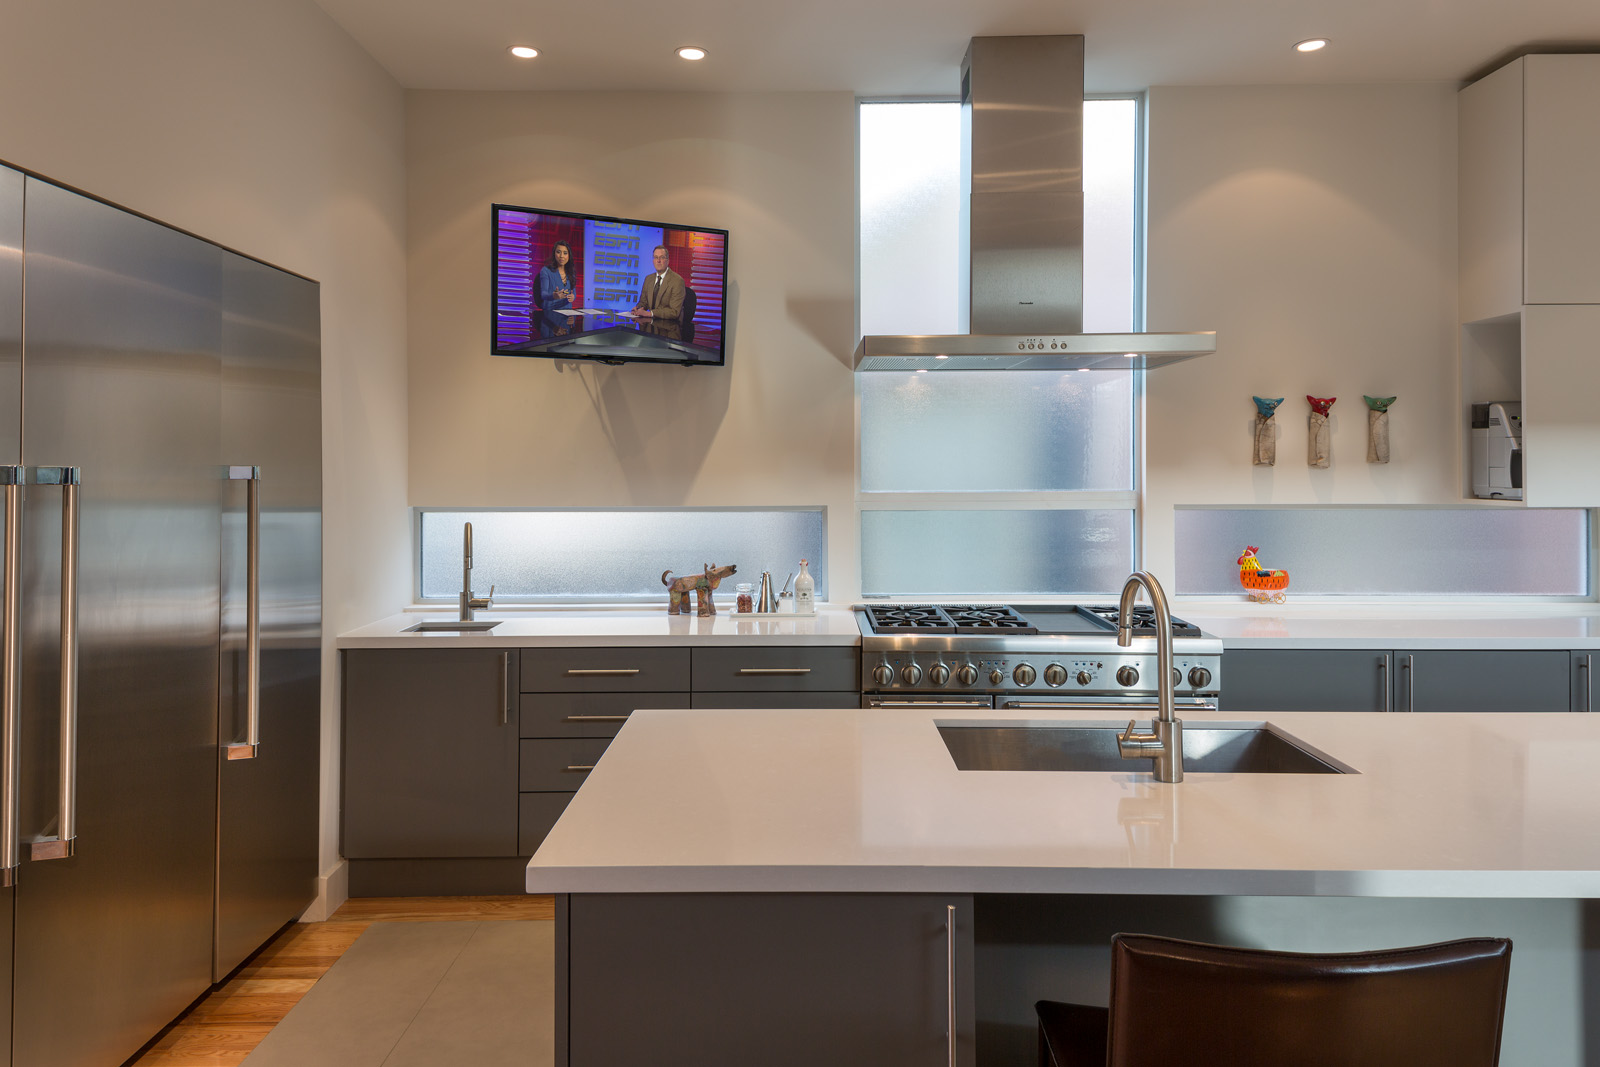 Телевизор в кухонном интерьере: какой выбрать, куда вешать и каких мест избегать